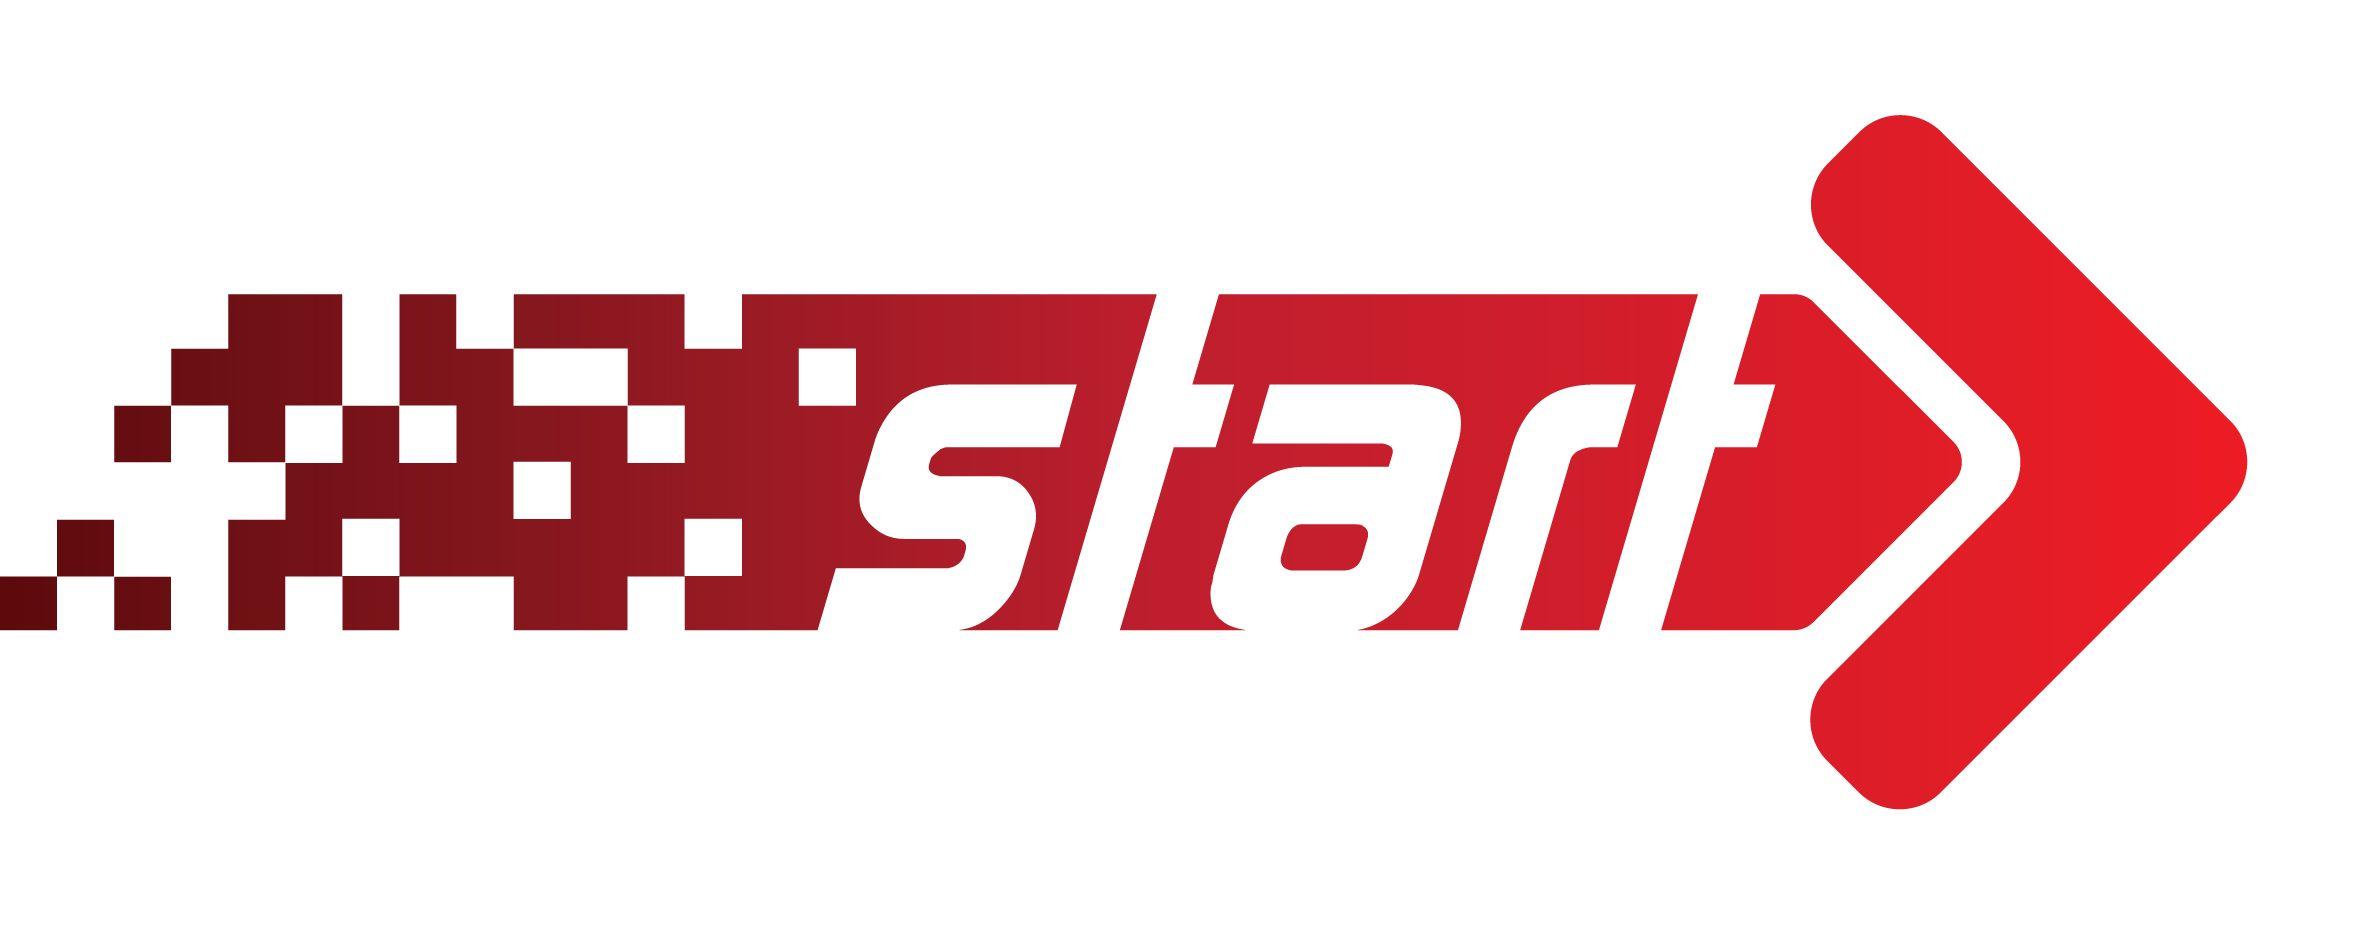 Start Logo - Start Logos